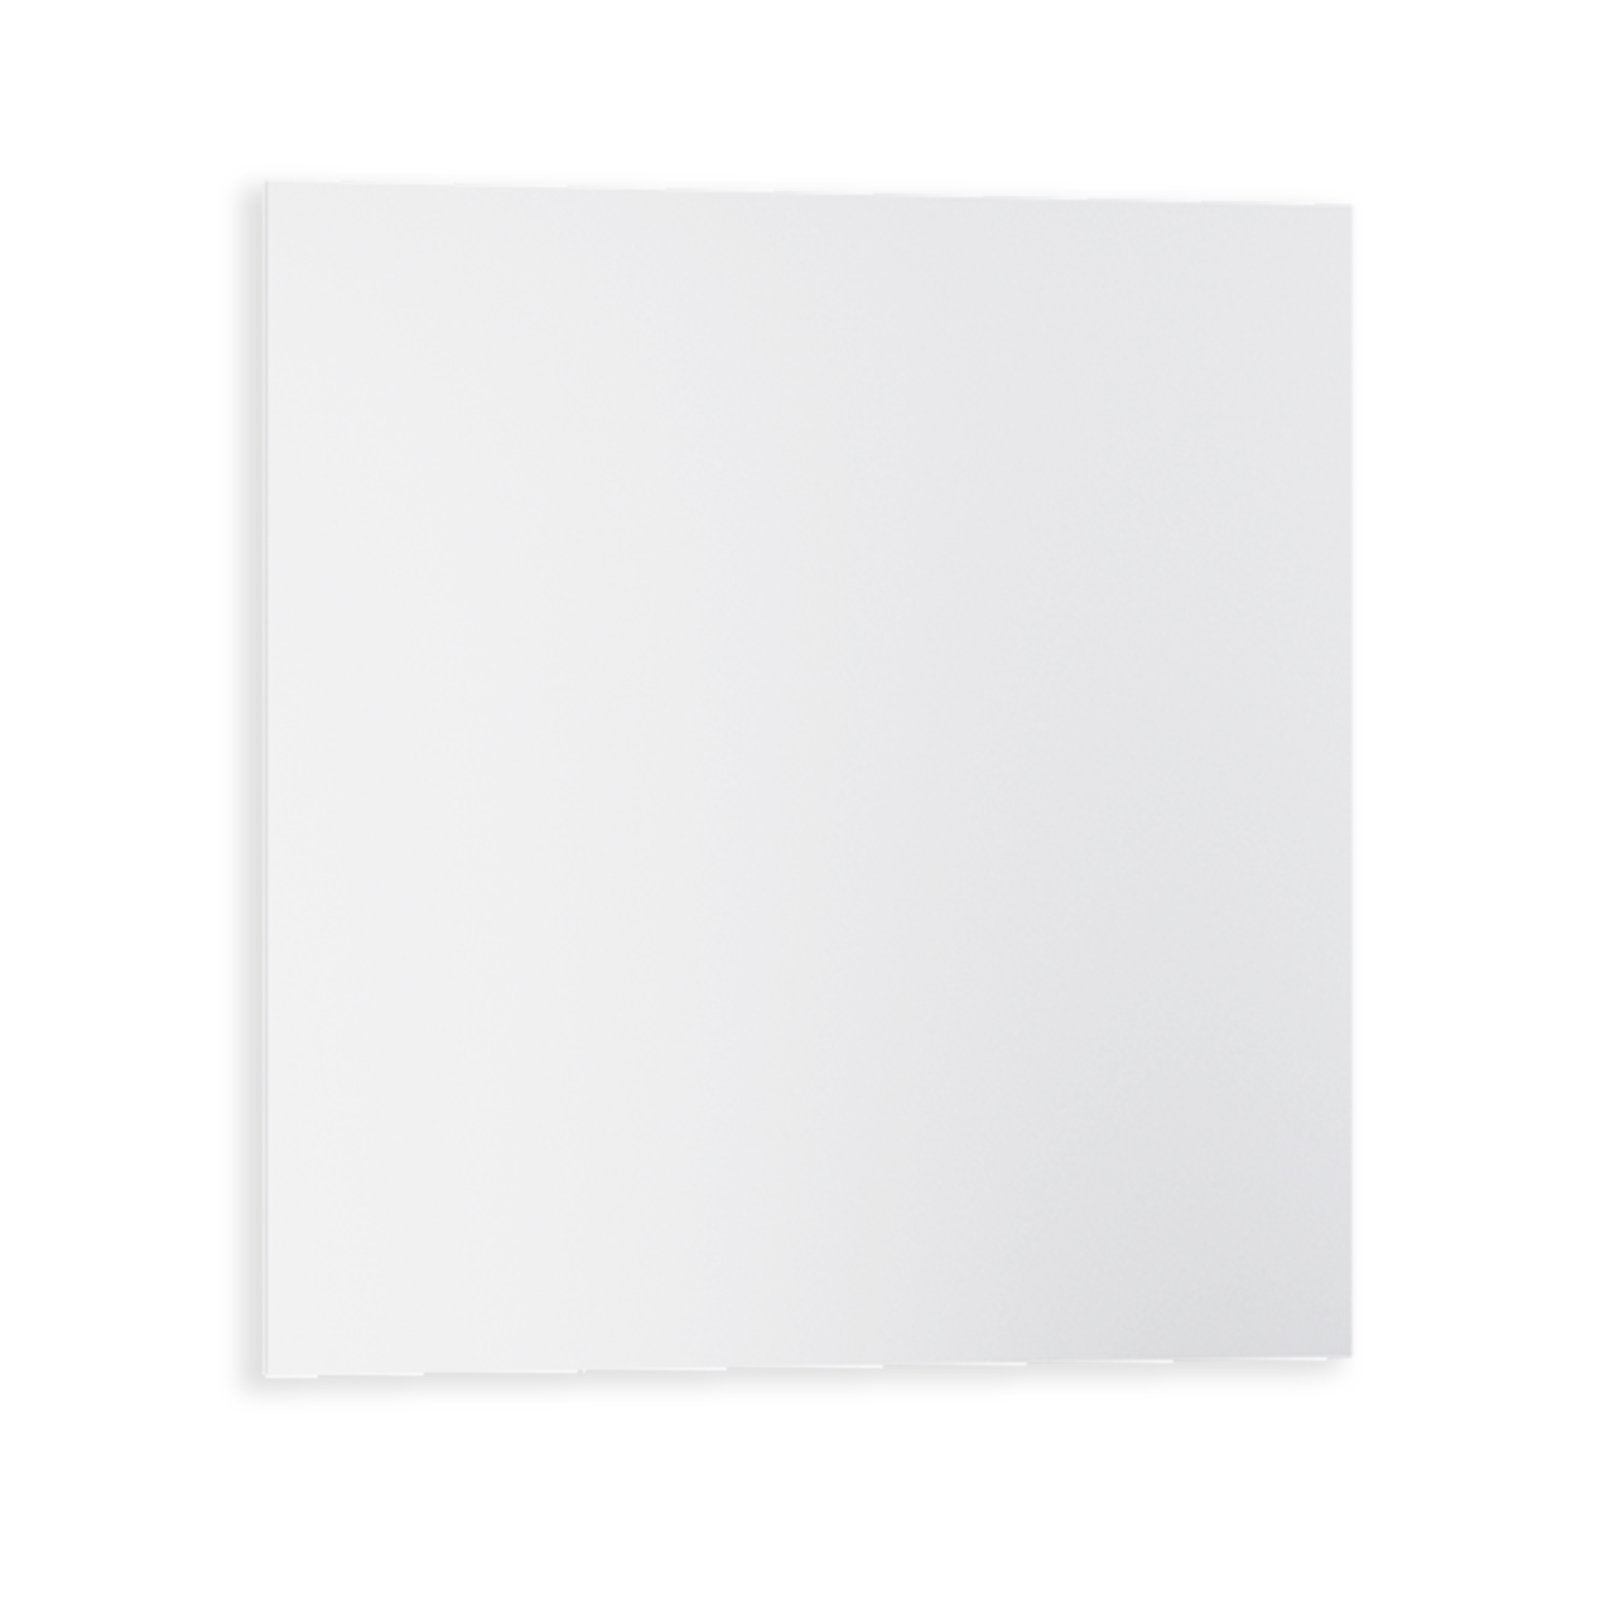 Afscheid klant Veilig Spiegel - mit Aufhängung - 60x60 cm | Online bei ROLLER kaufen